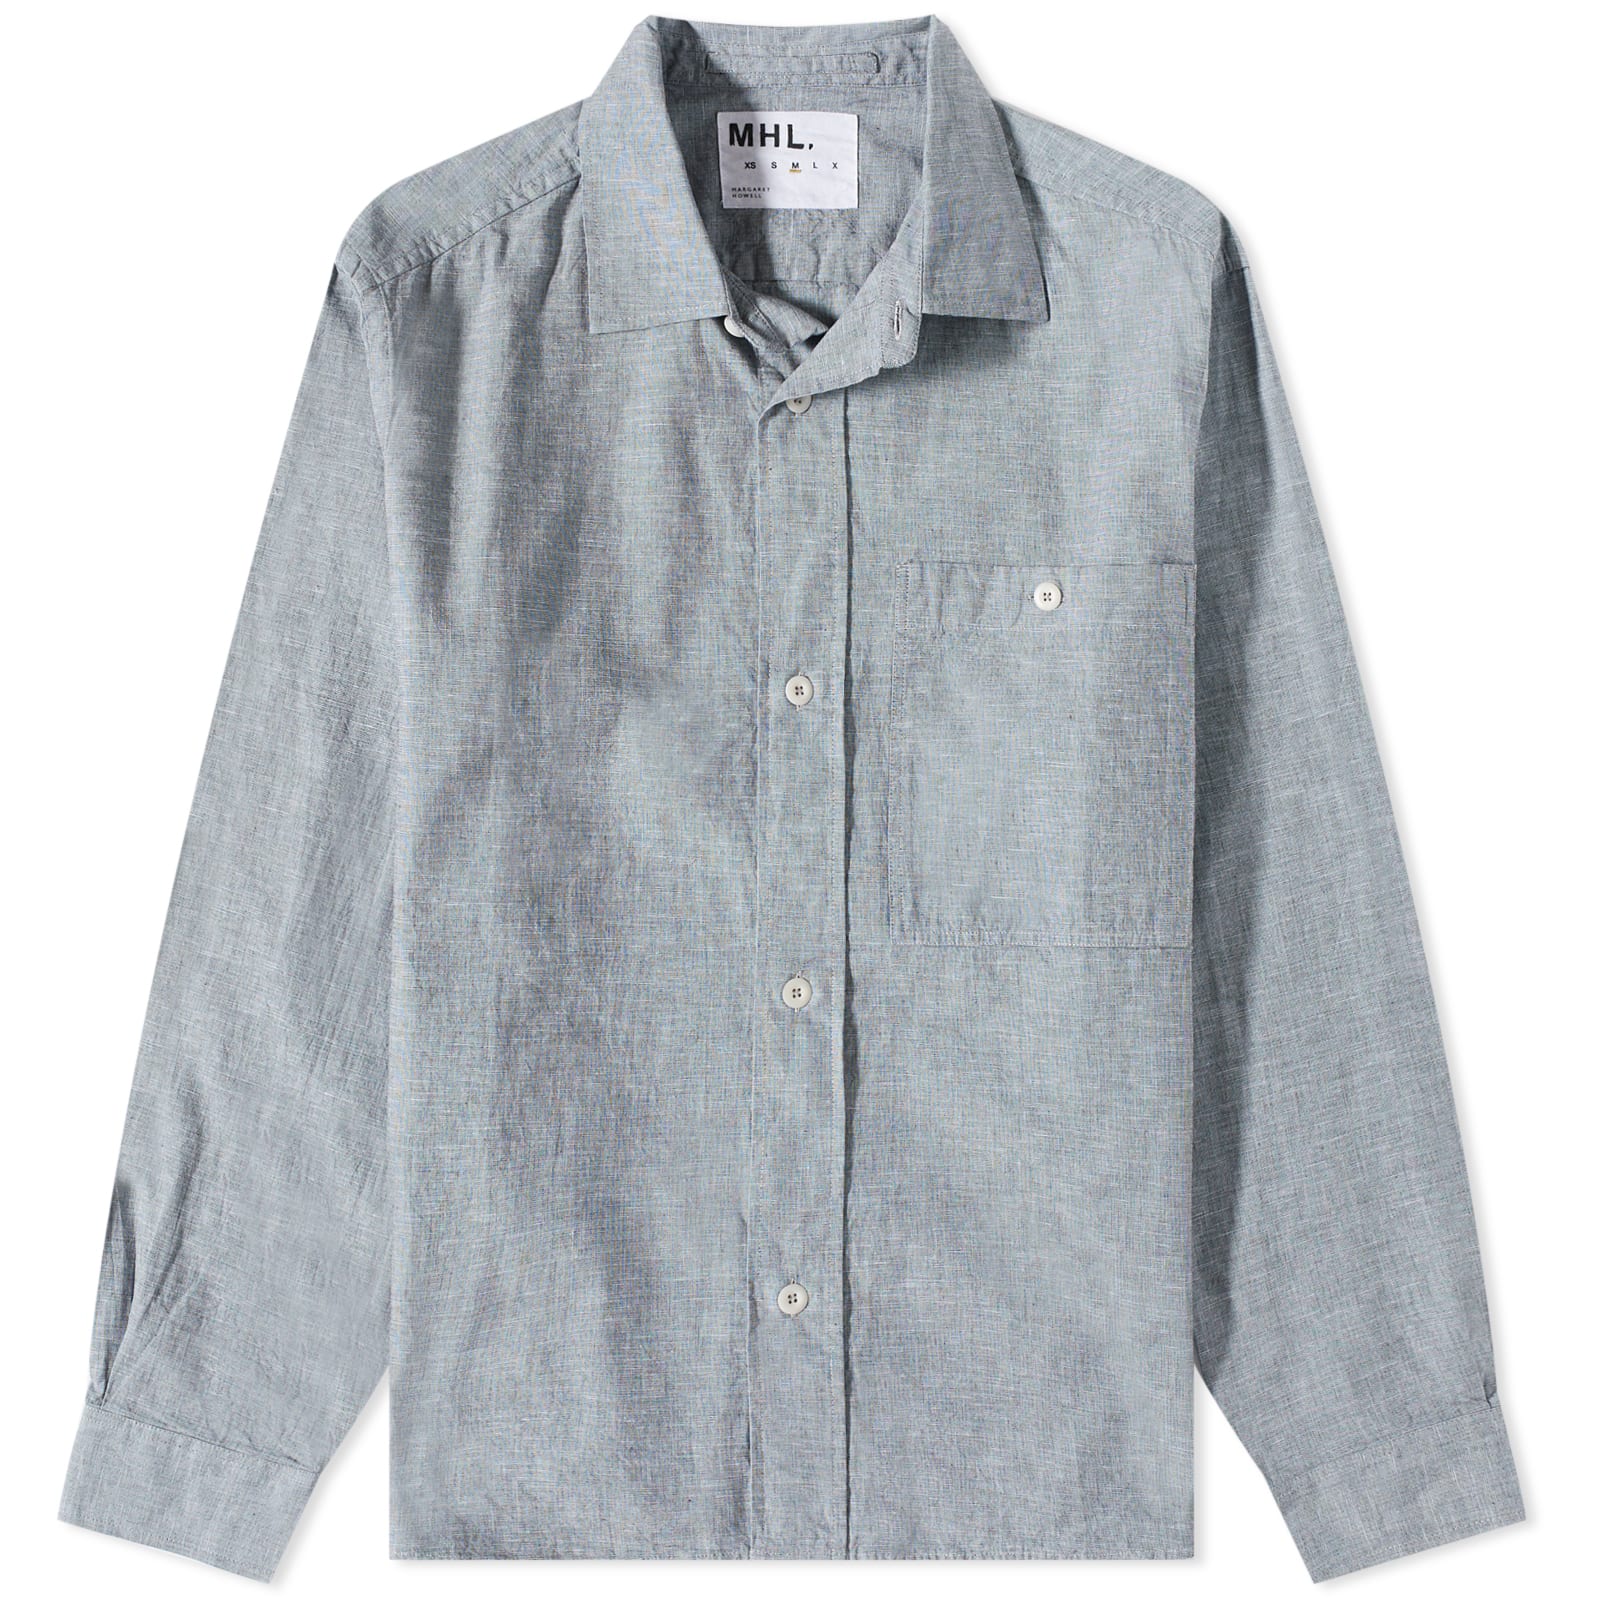 MHL. メンズLサイズ 羽織り - シャツ